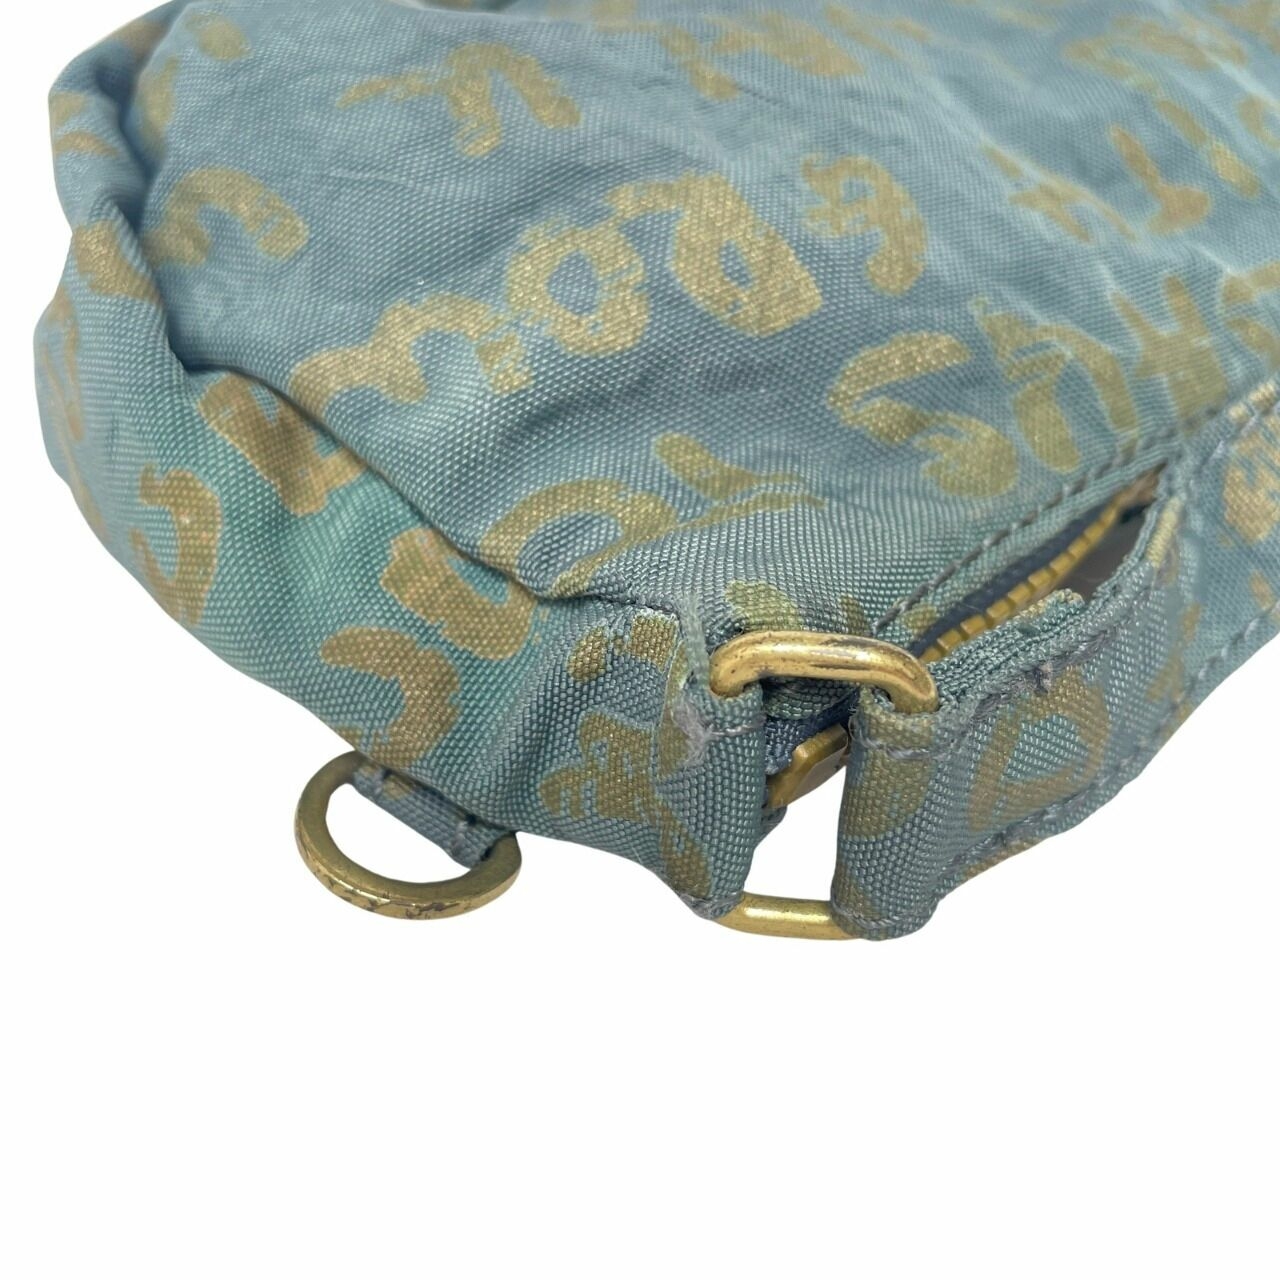 Kipling Blue Denim Shoulder Bag